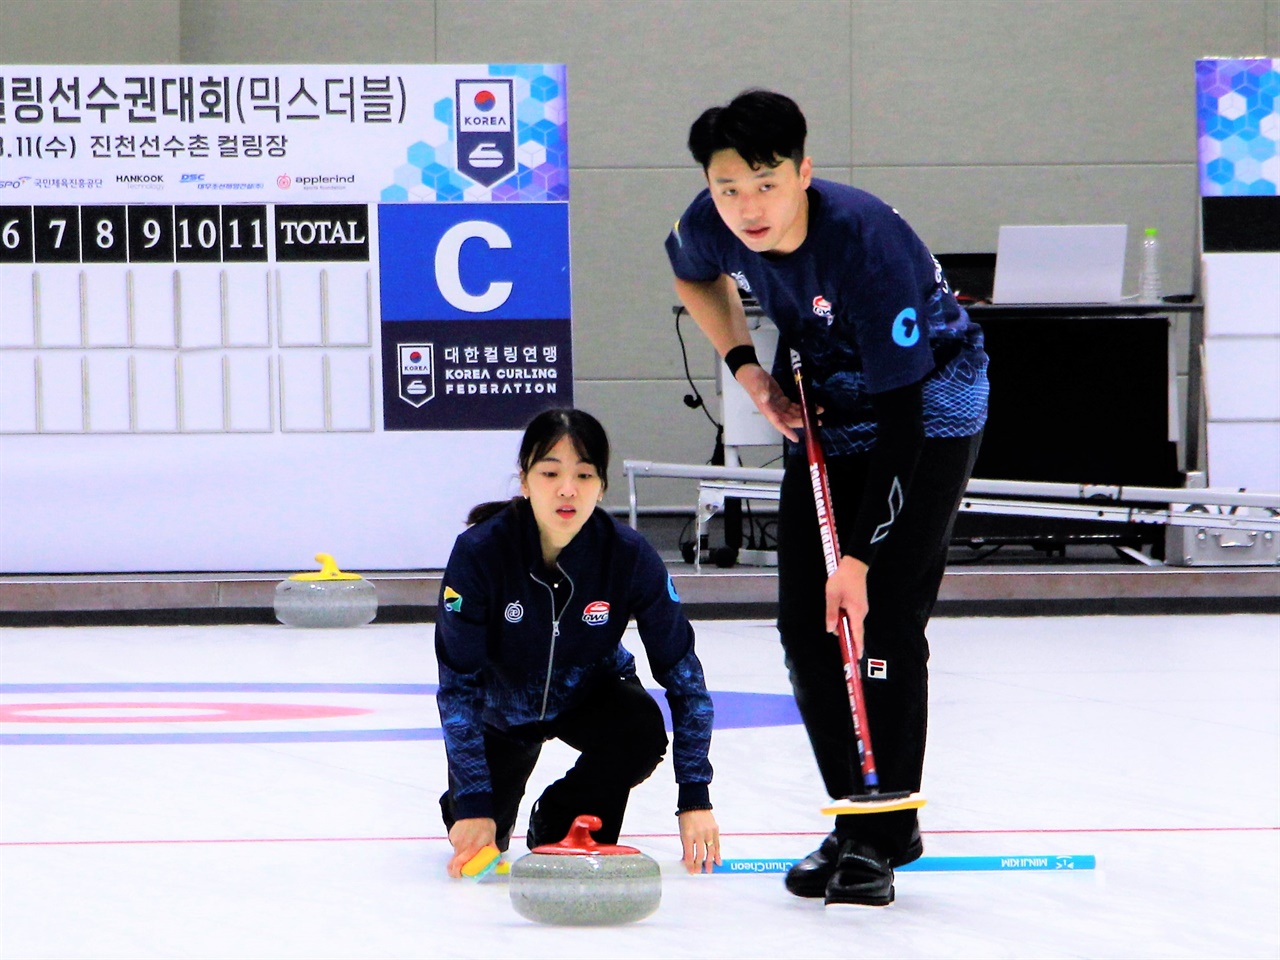  2021 KB금융 한국컬링선수권대회 믹스더블 대회에서 김민지 - 이기정 선수가 스톤을 투구하고 있다.